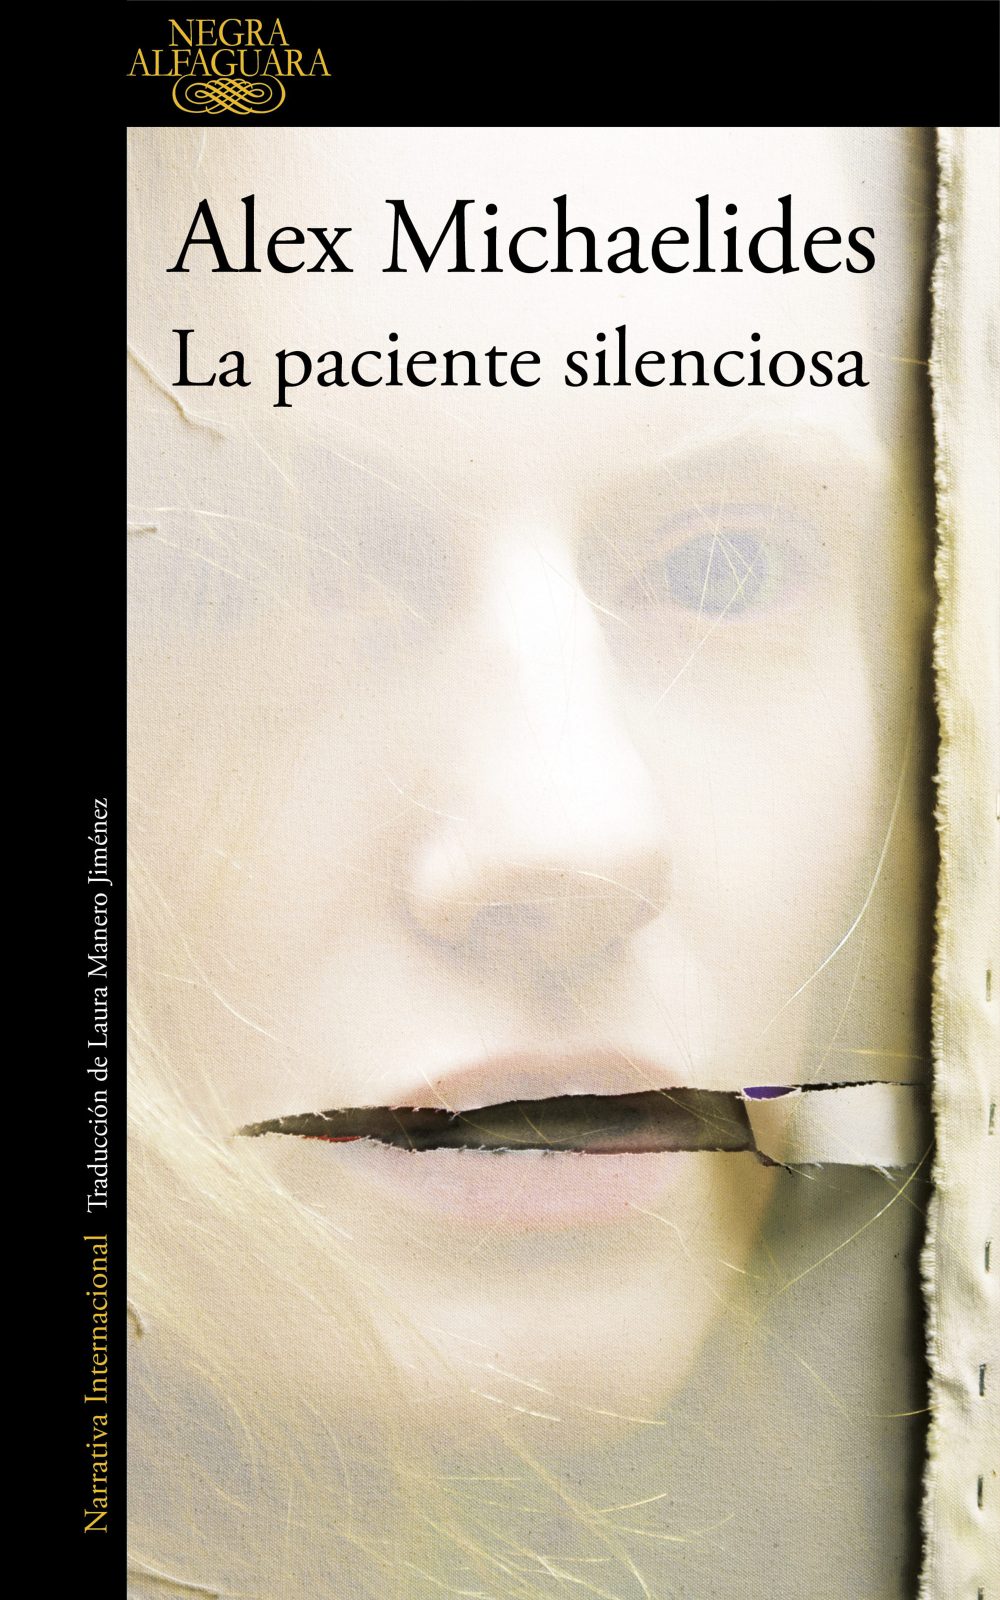 La paciente silenciosa, la novela llevará Brad Pitt al cine Zenda